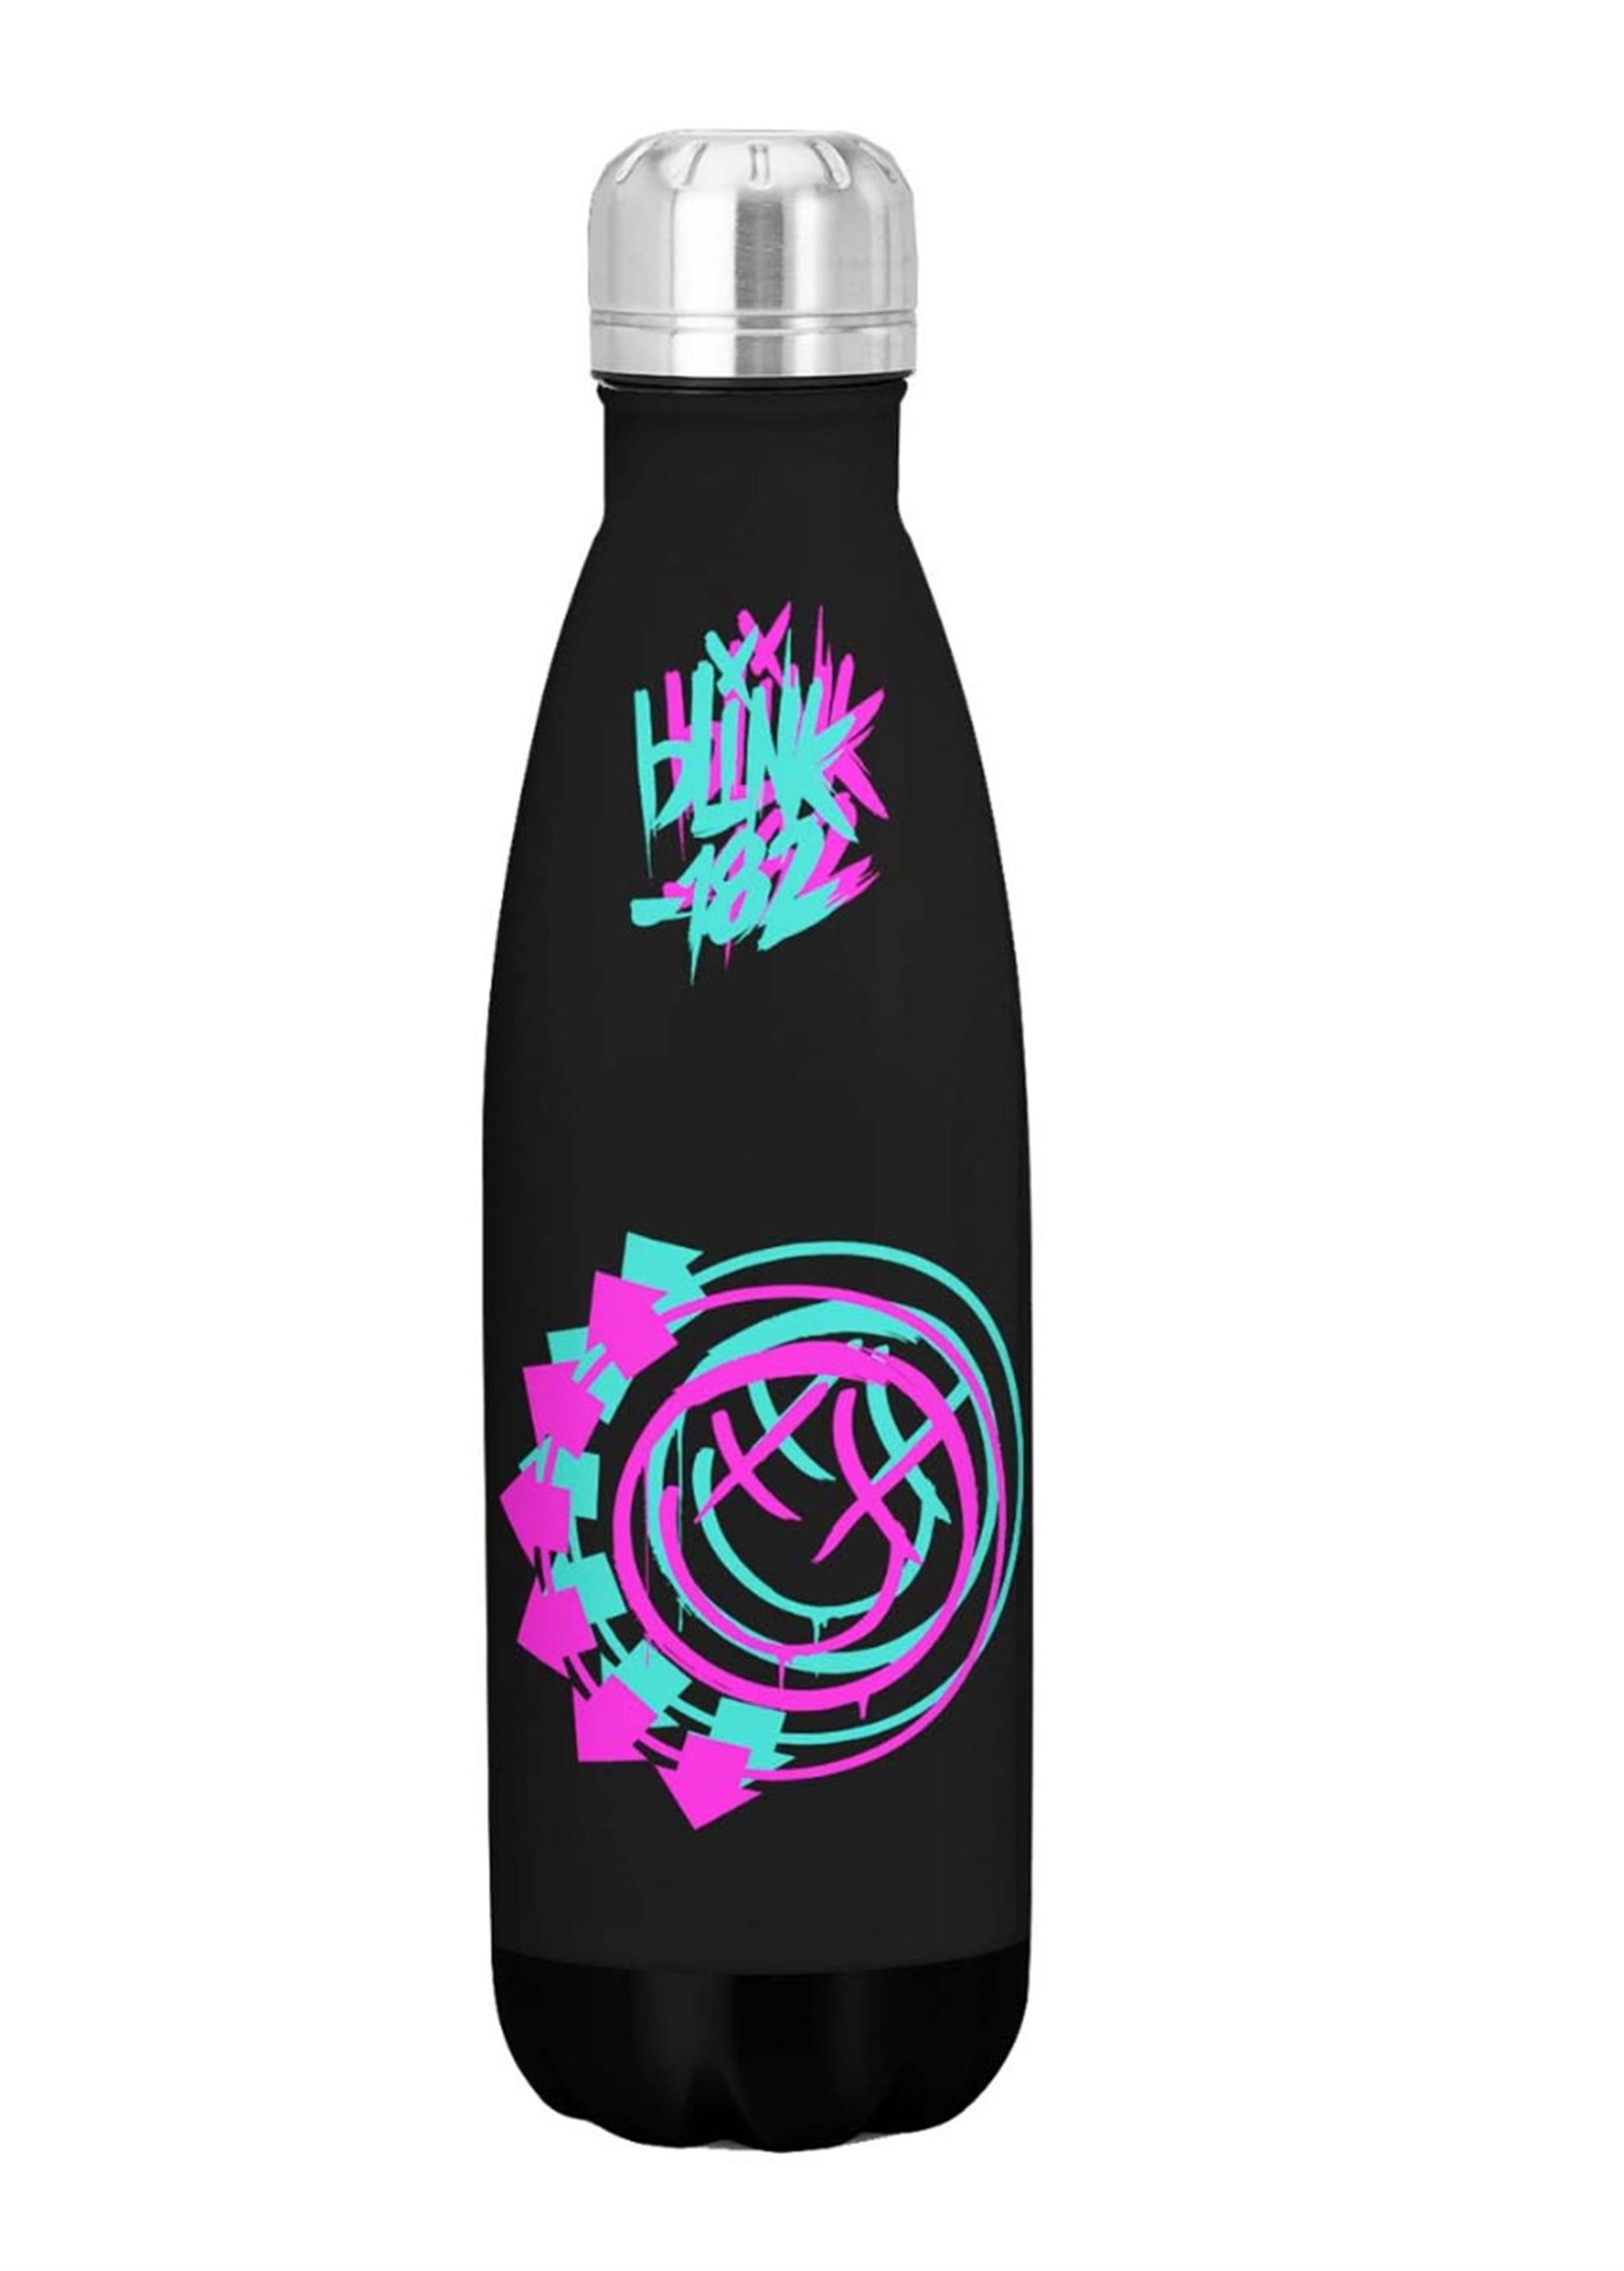 Blink 182 Smile Drink Bottle